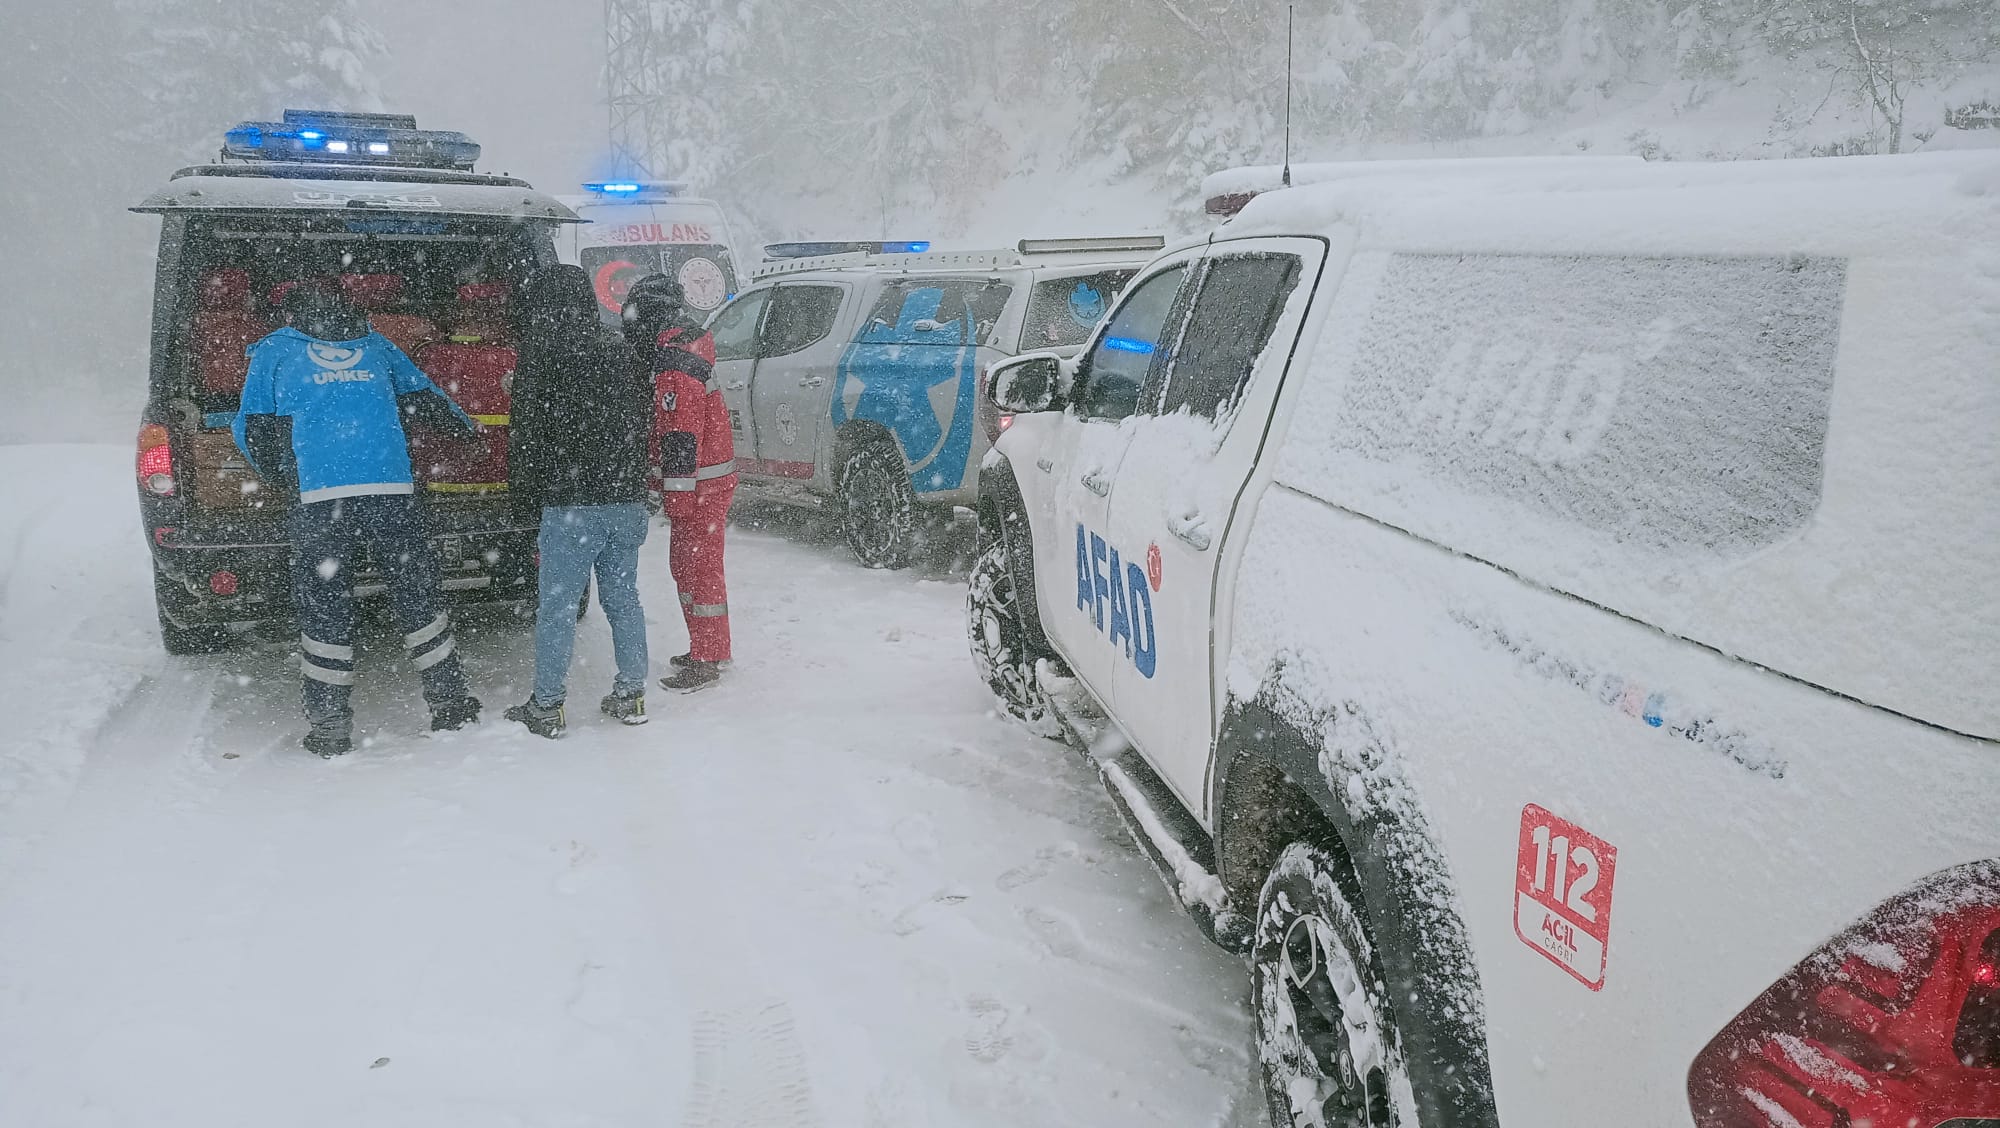 Bolu’da kar yağışı nedeniyle mahsur kalan 20 kampçı ve 6 çalışan, başarılı bir kurtarma operasyonuyla güvenli bir şekilde kurtarıldı.